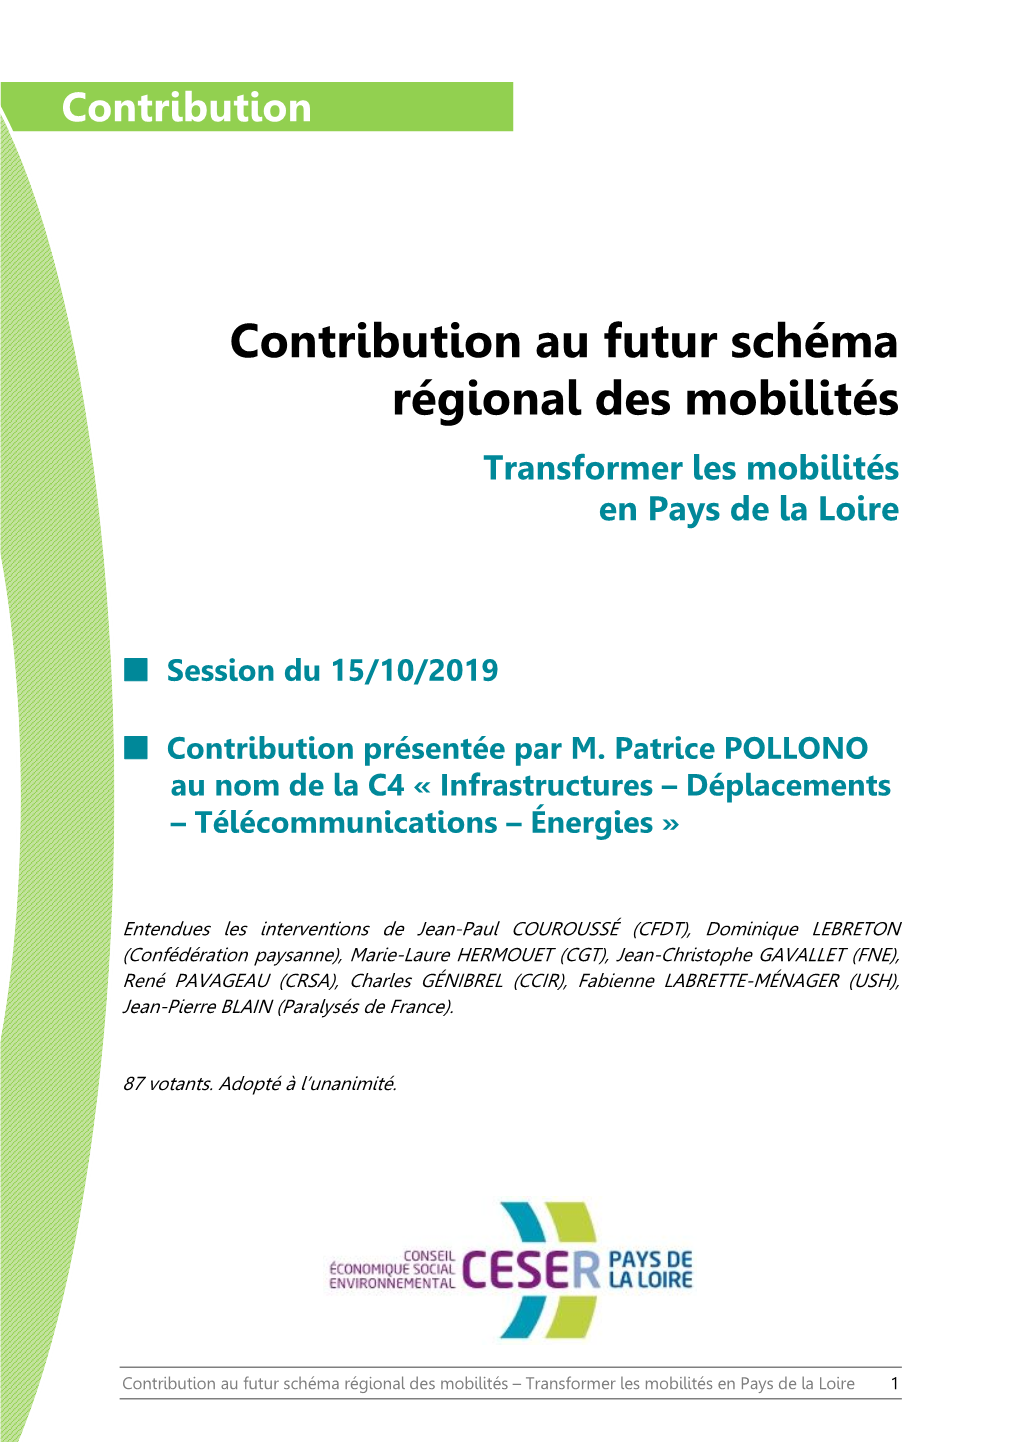 Contribution Au Futur Schéma Régional Des Mobilités Transformer Les Mobilités En Pays De La Loire